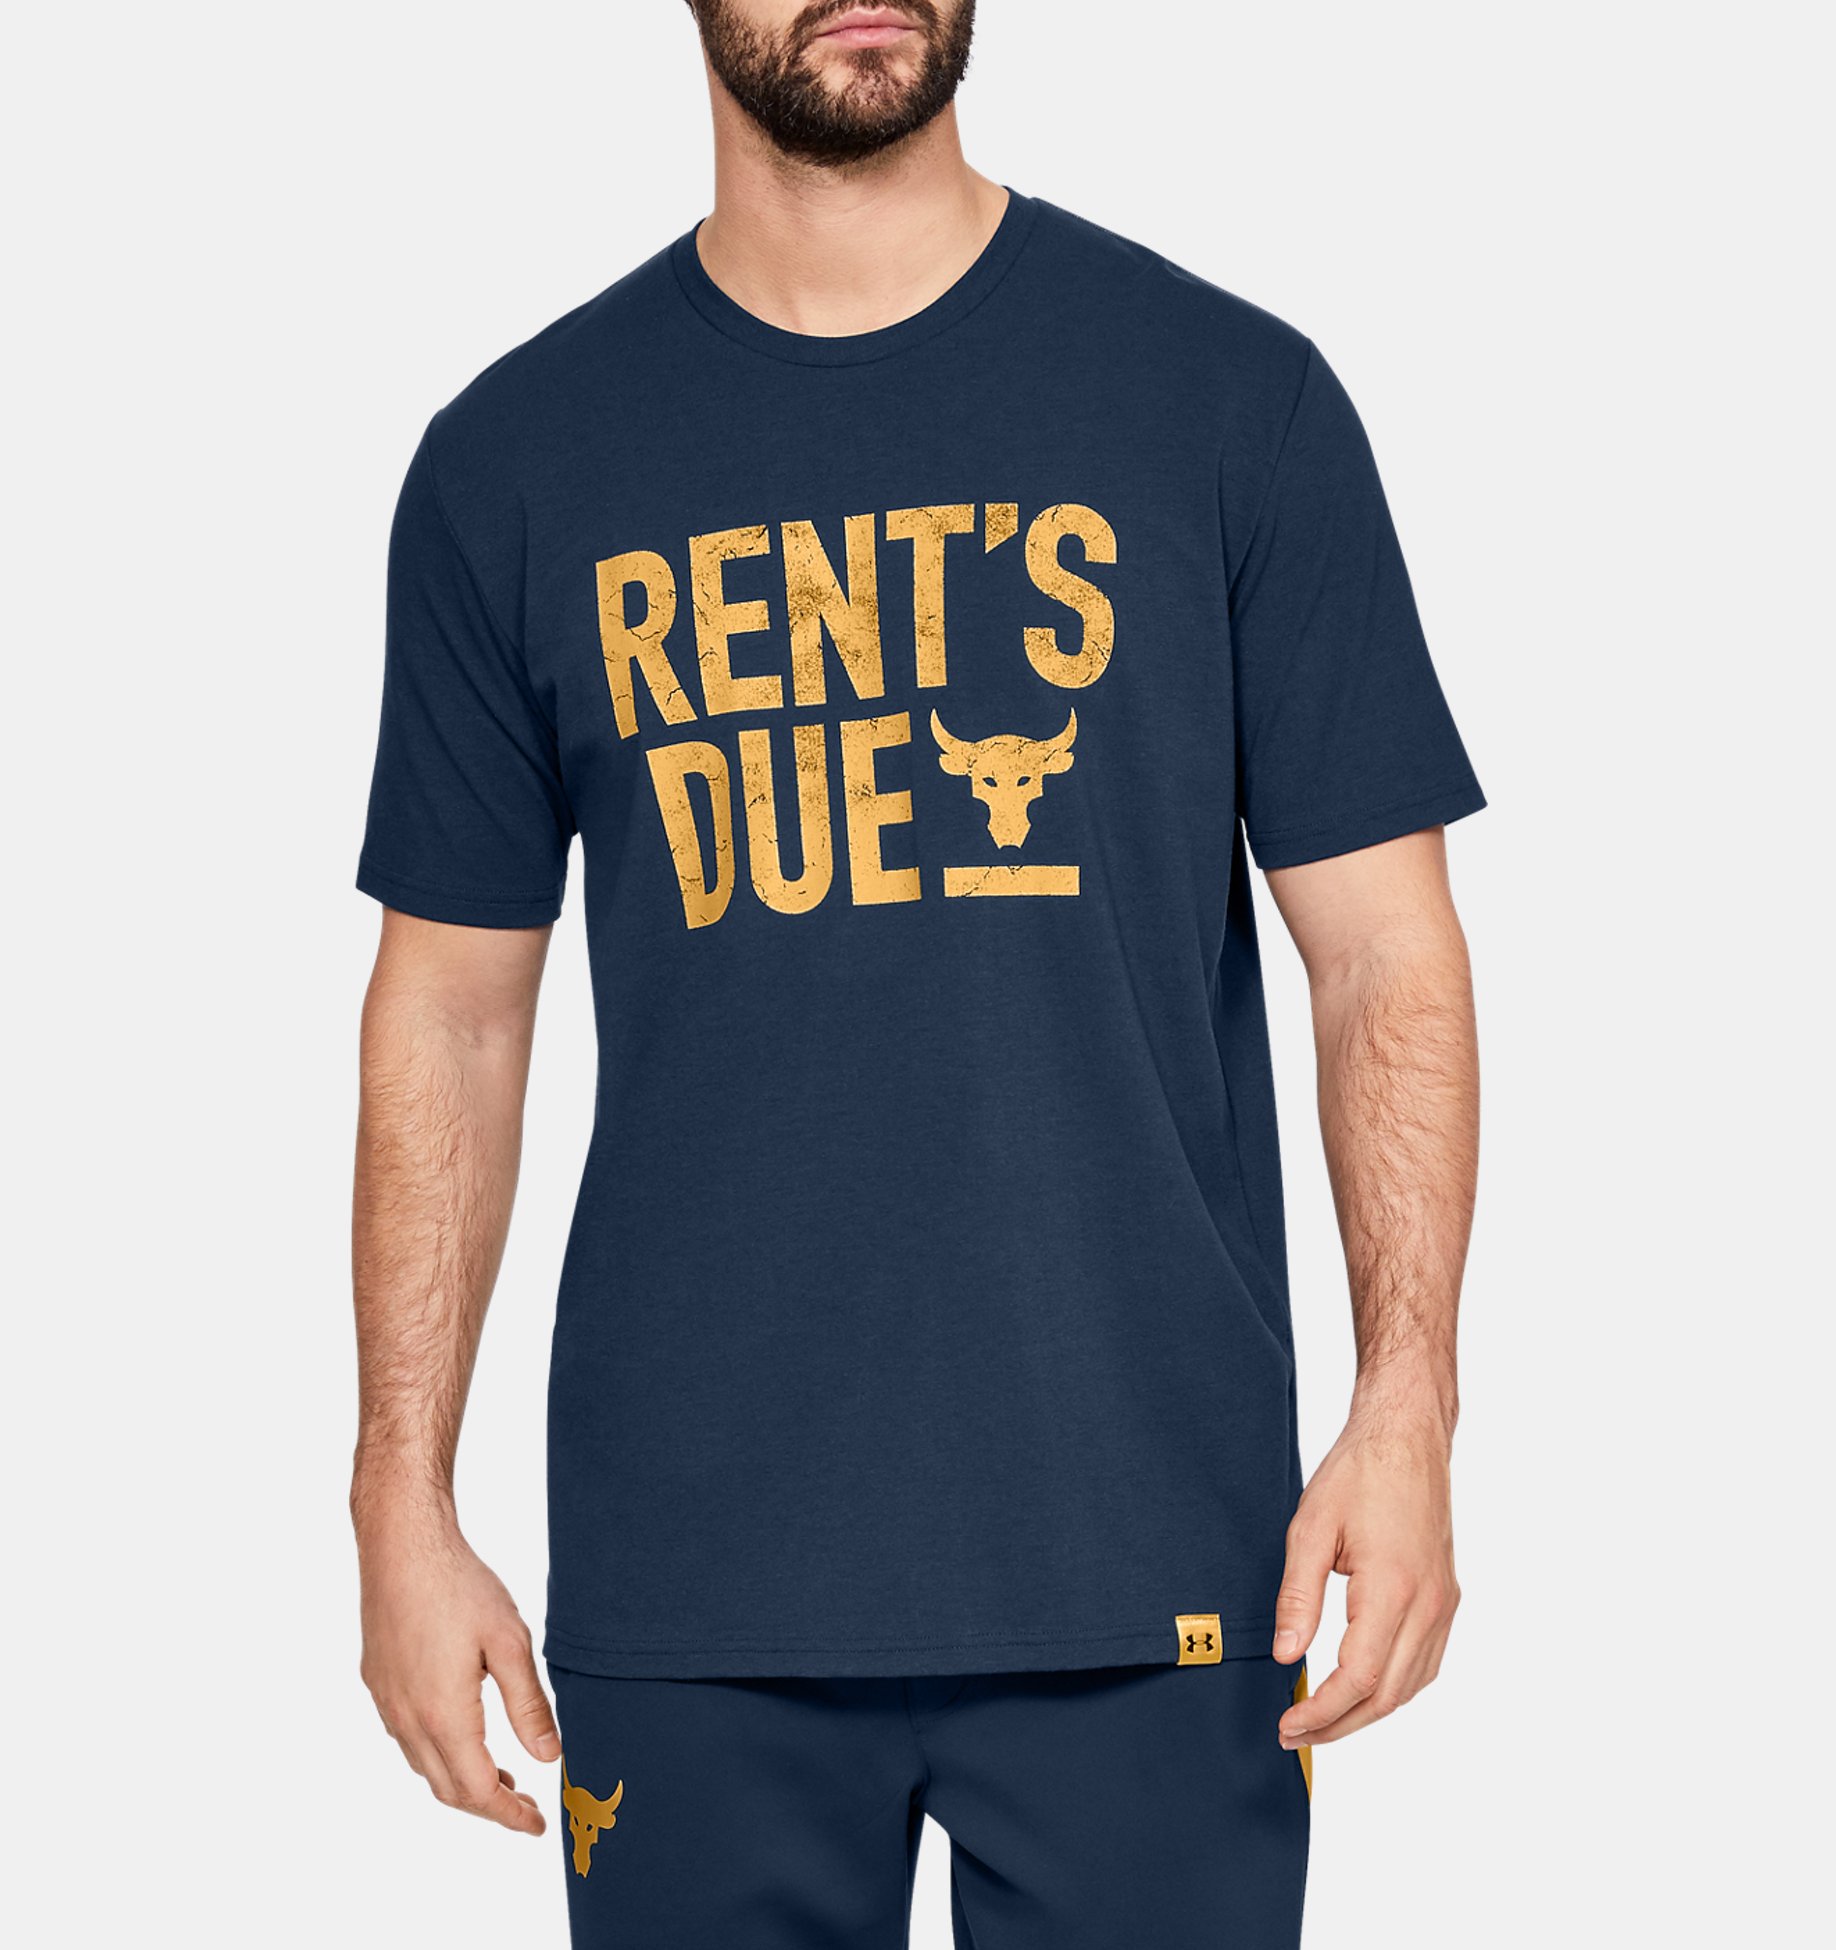 Under Armour Men's Project Rock Rent's Due Graphic T-Shirt 2XL Bend Boundaries